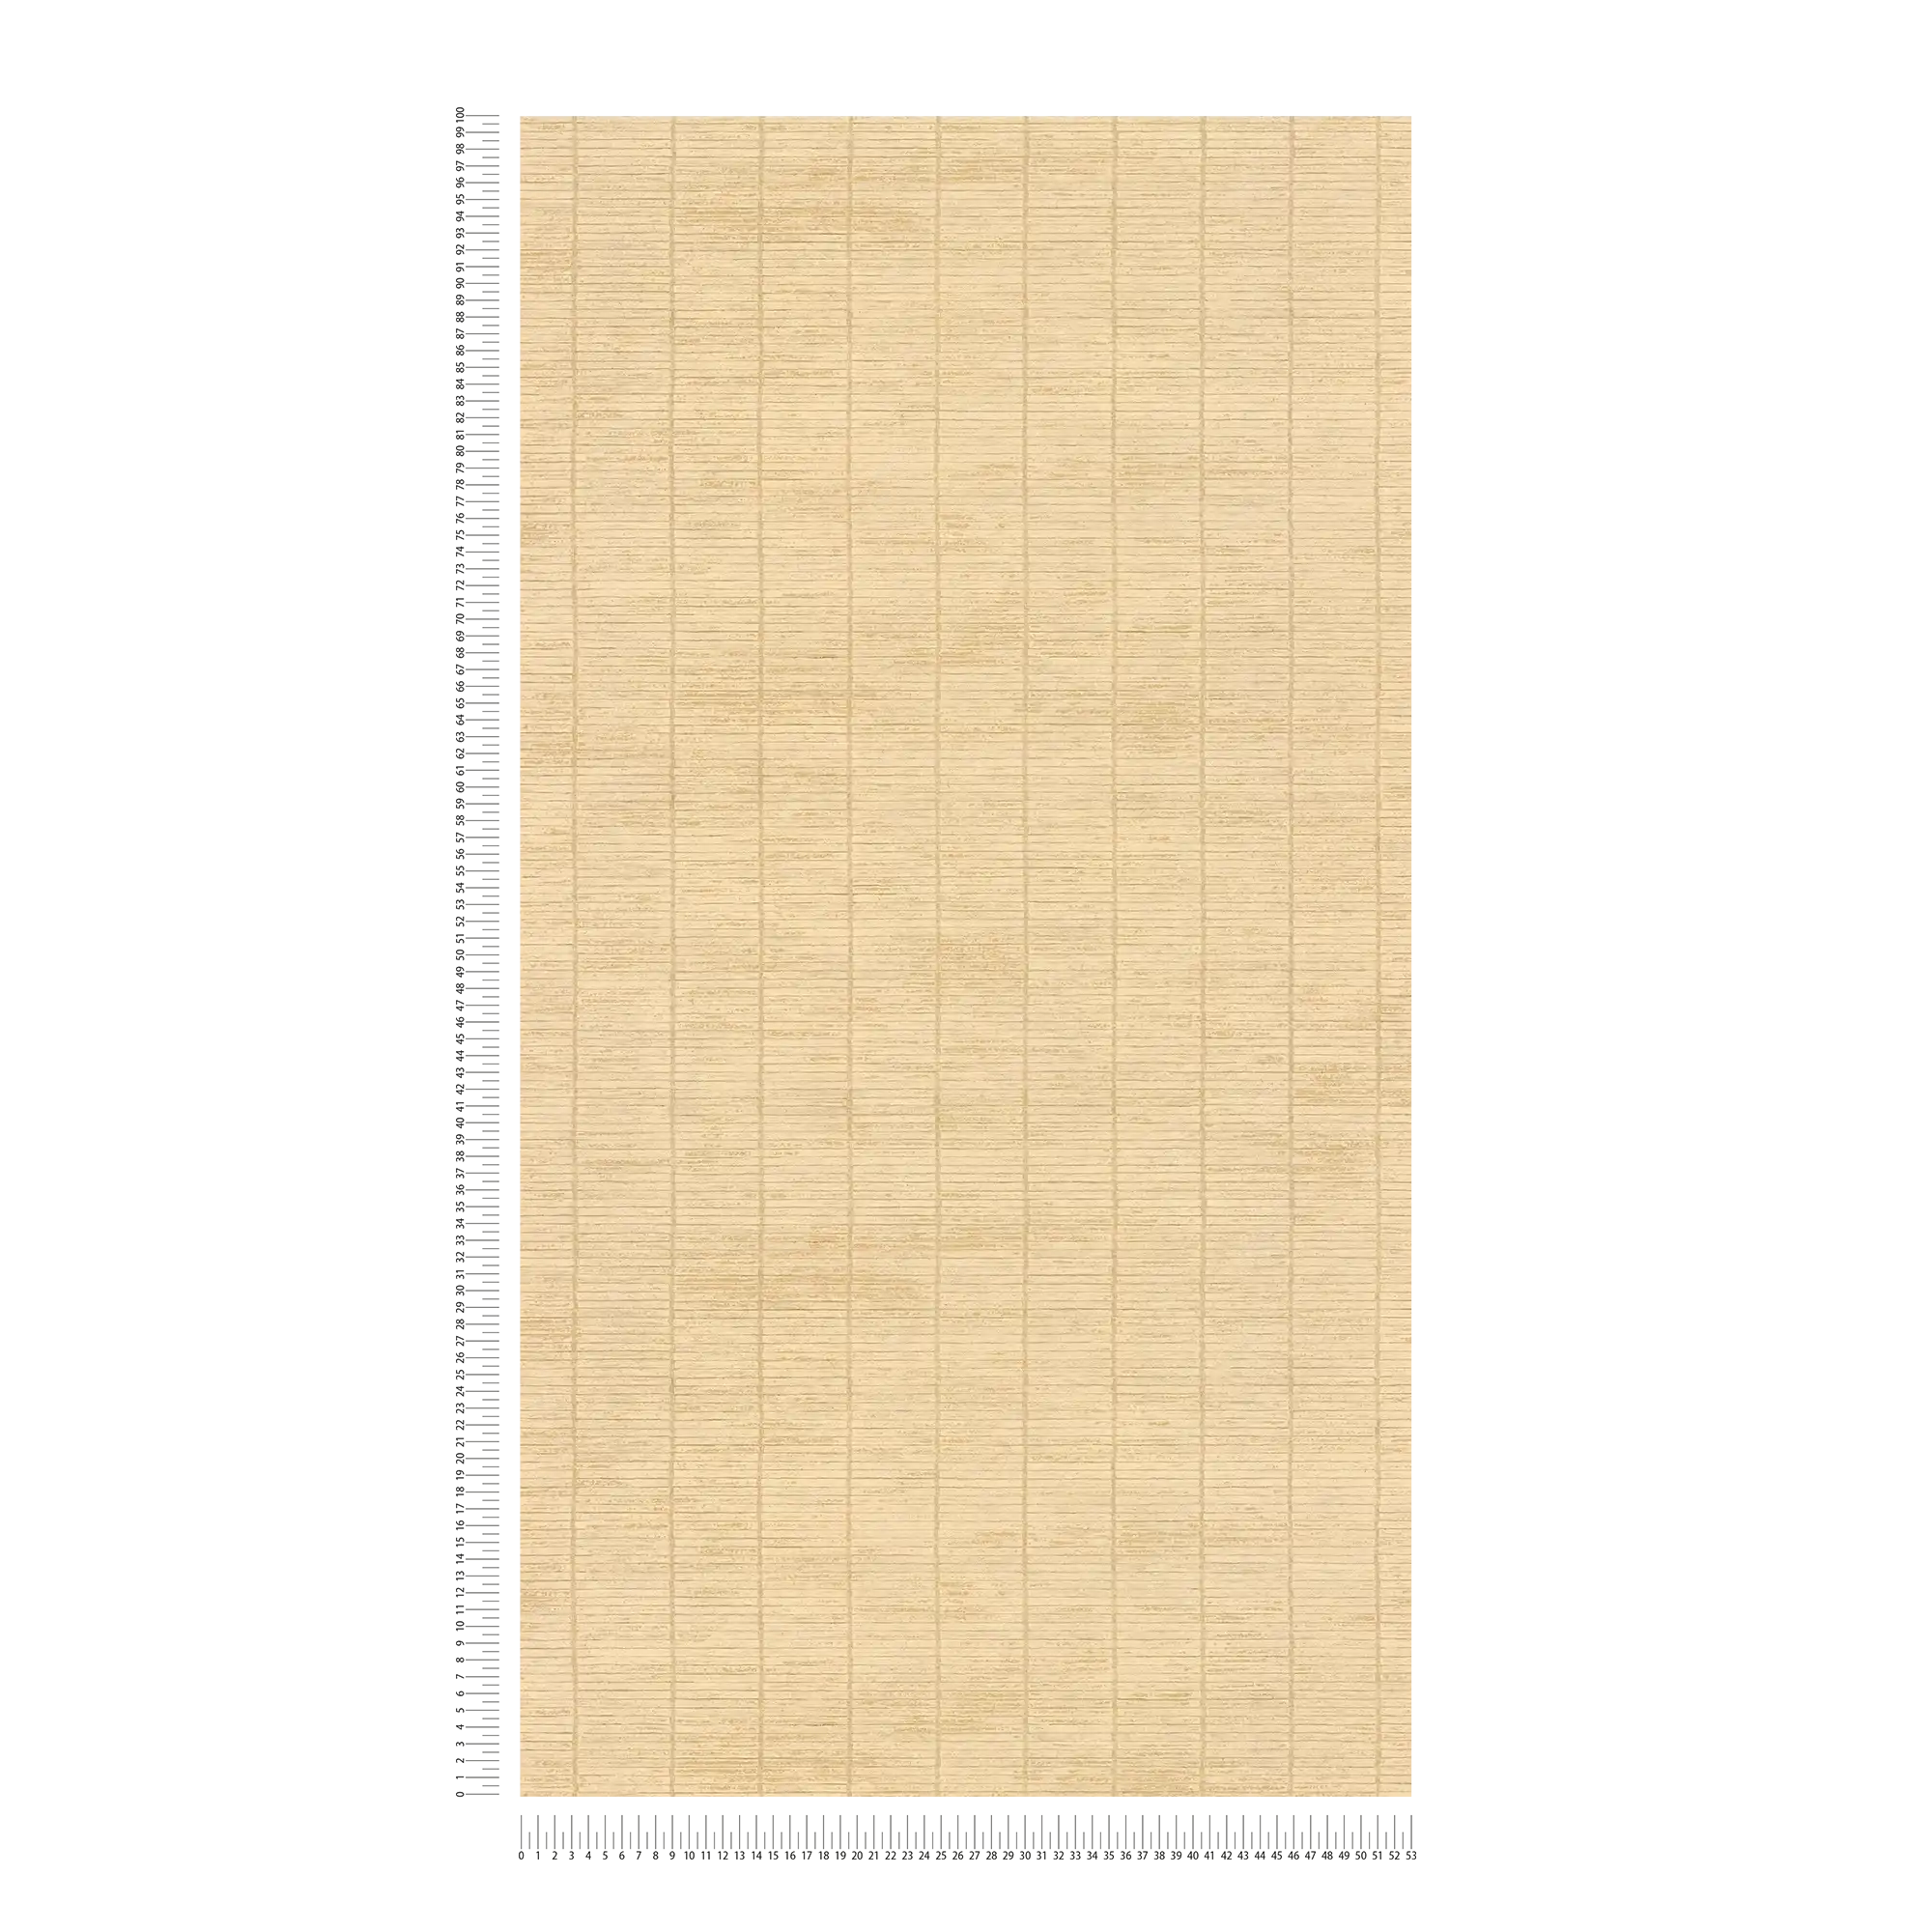             Carta da parati non tessuta con l'aspetto di una stuoia di paglia asiatica - beige
        